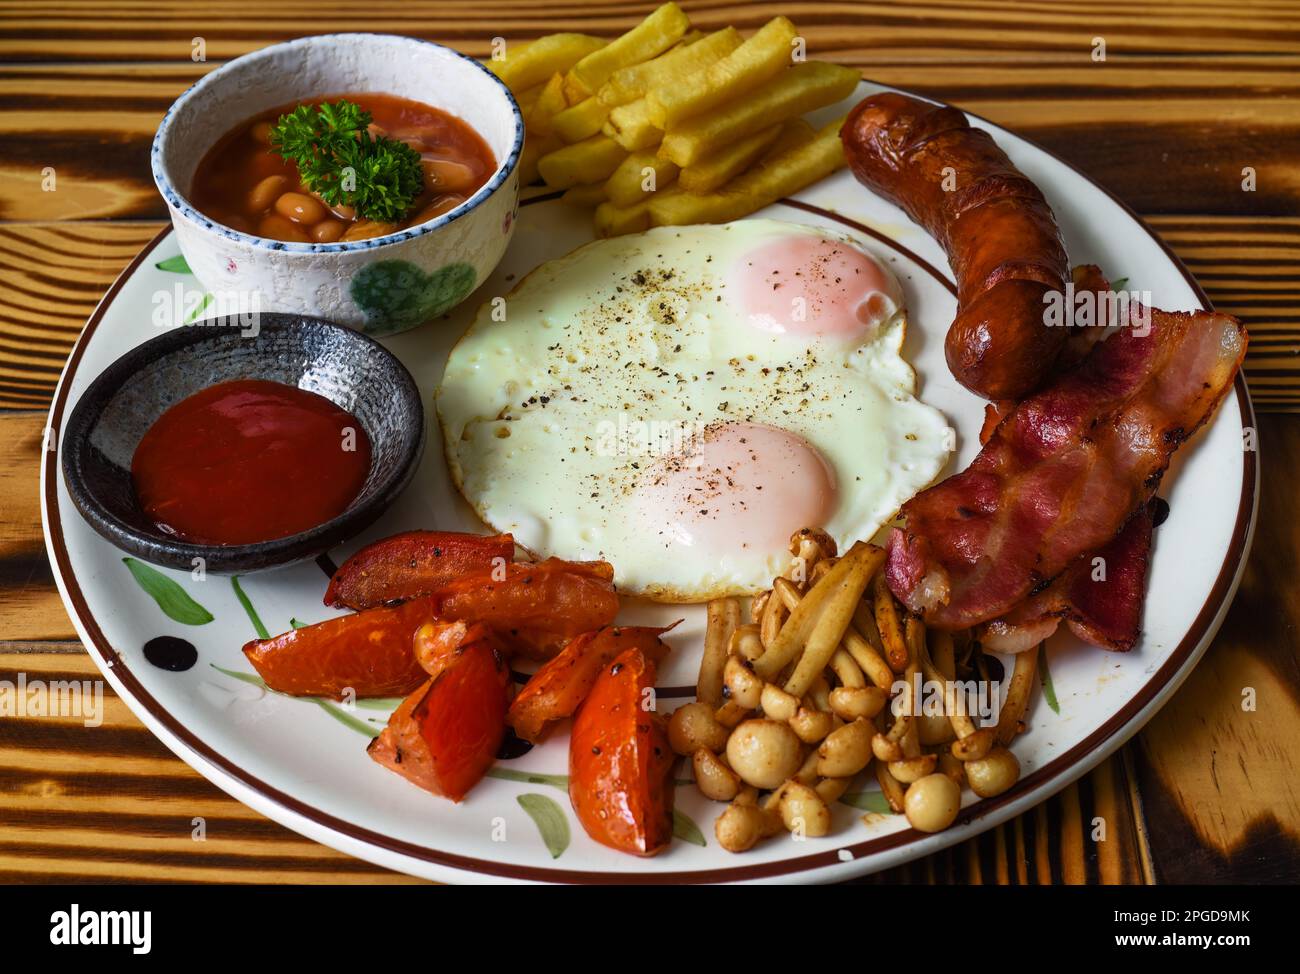 Gesundes englisches Frühstück mit Spiegeleiern, Würstchen, Speck, pommes frites, Bohnen und Tomaten in der Nähe Stockfoto